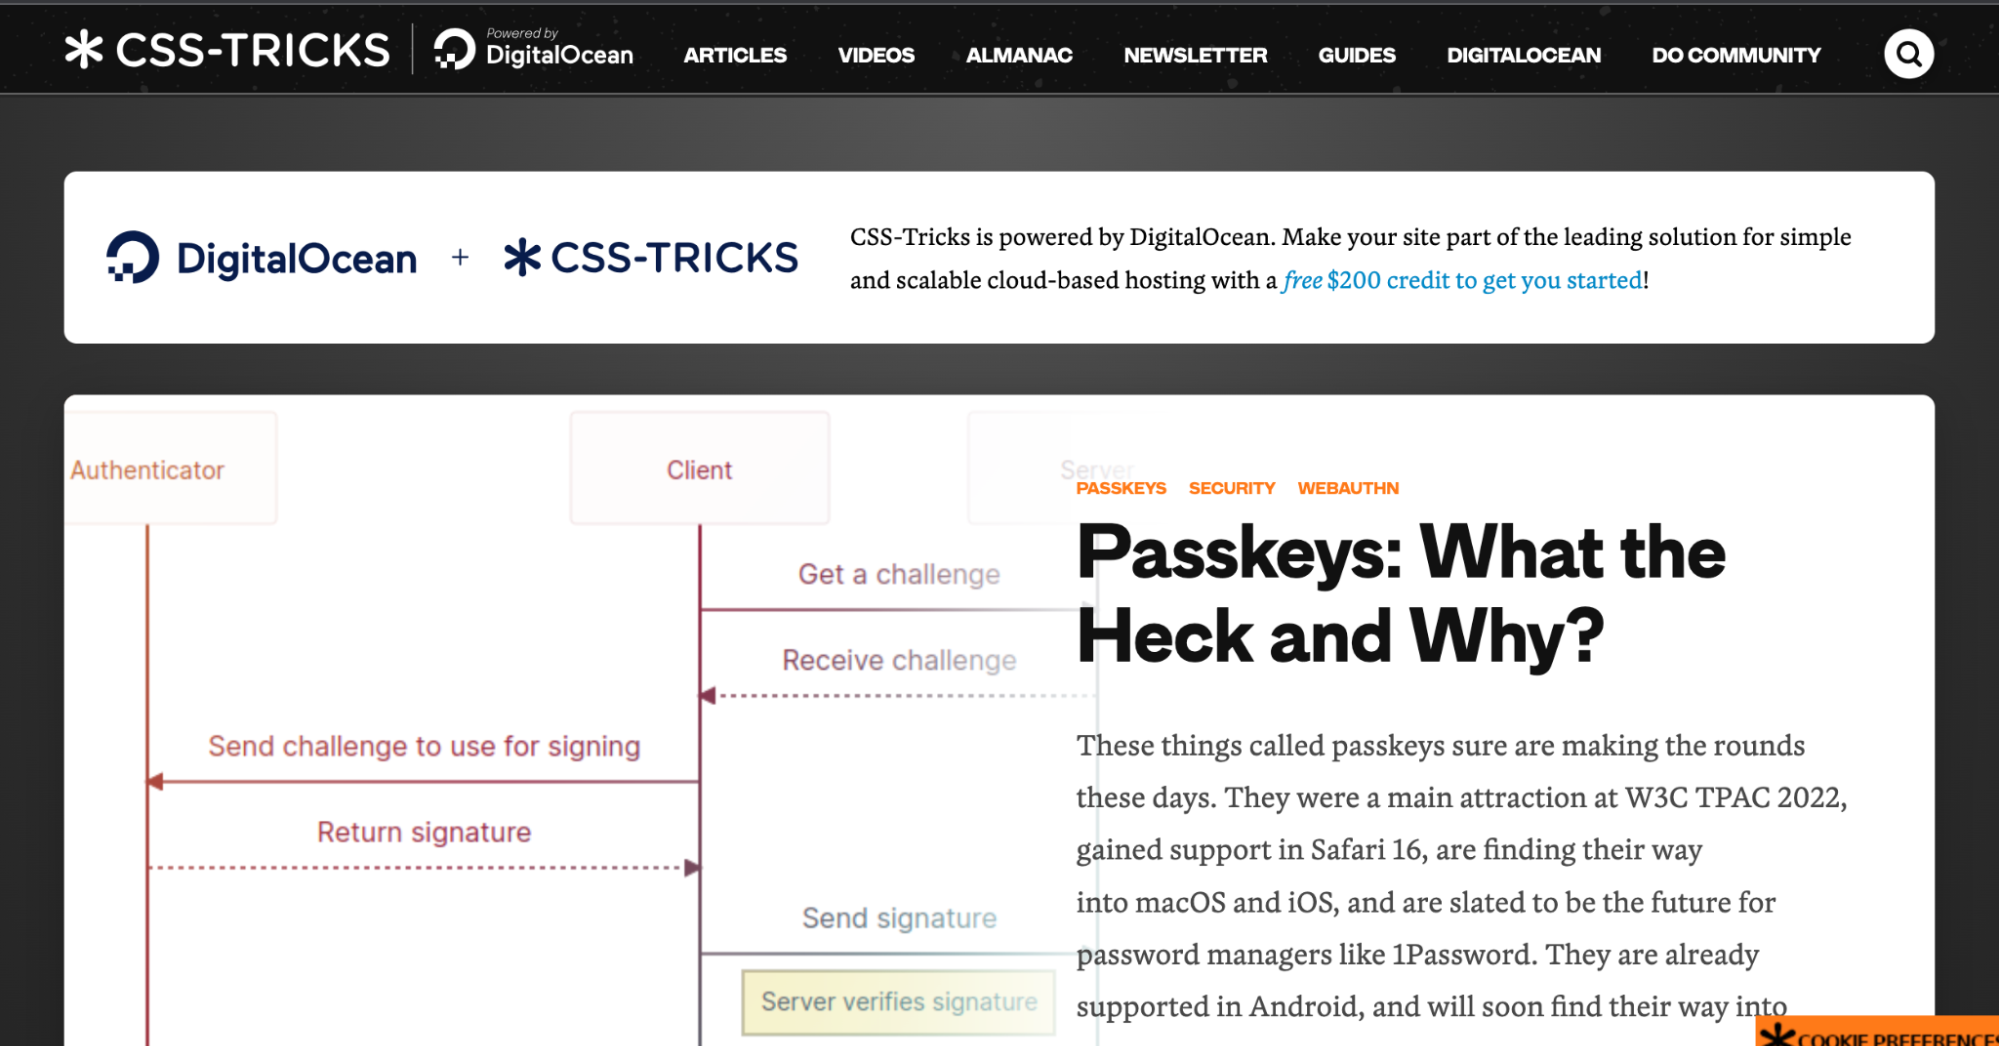  CSS-Tricks For Design & Development - Ectesso